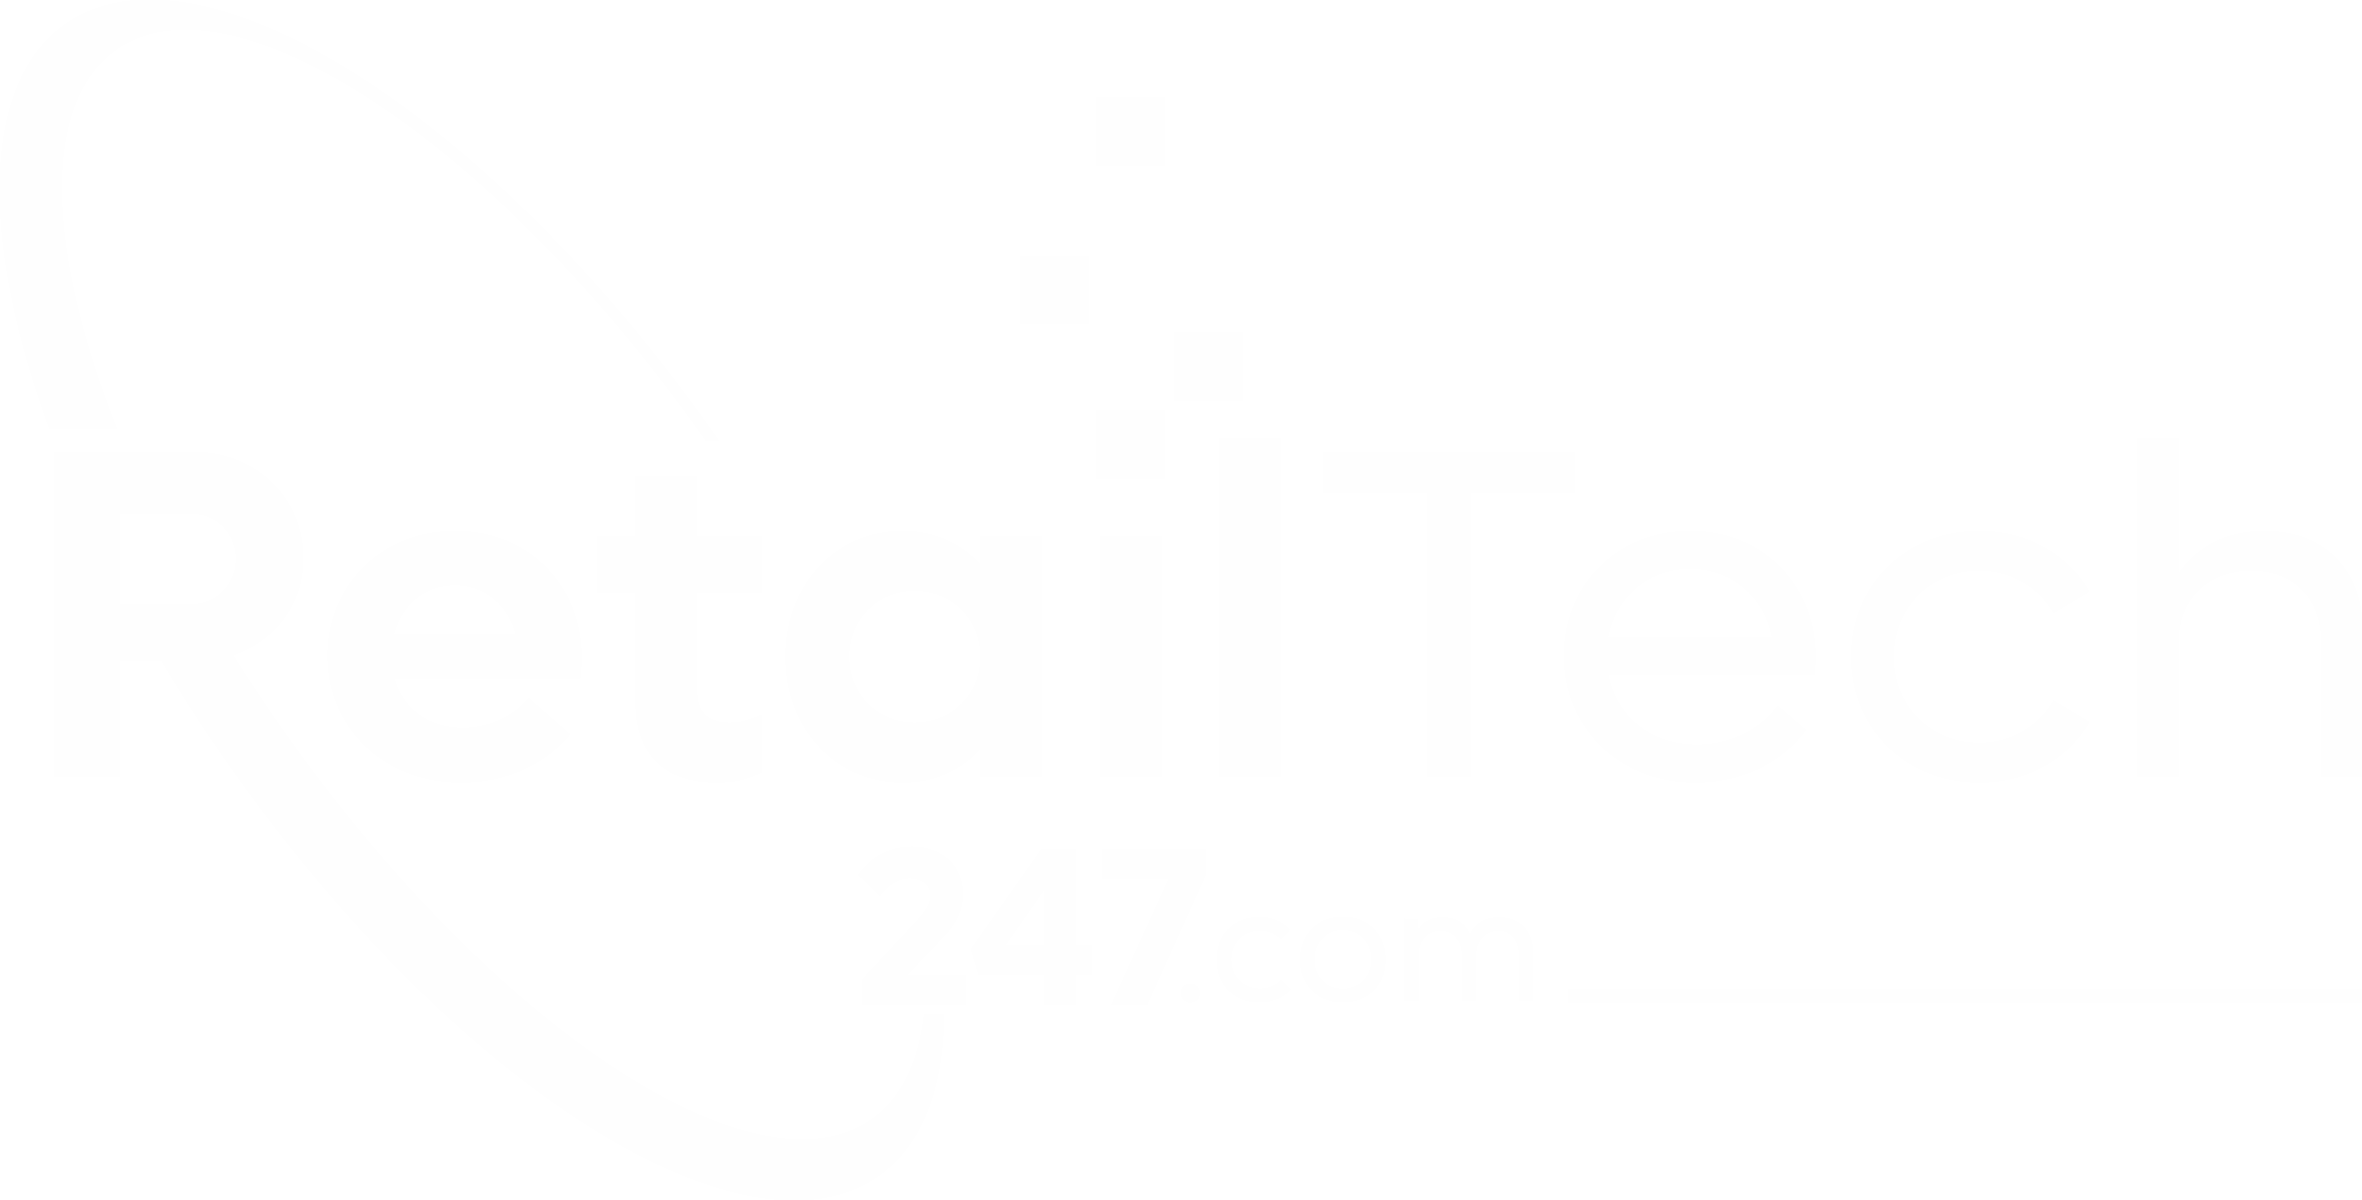 Exhibition RetailTech247 Retail Virtual Expo Logo white